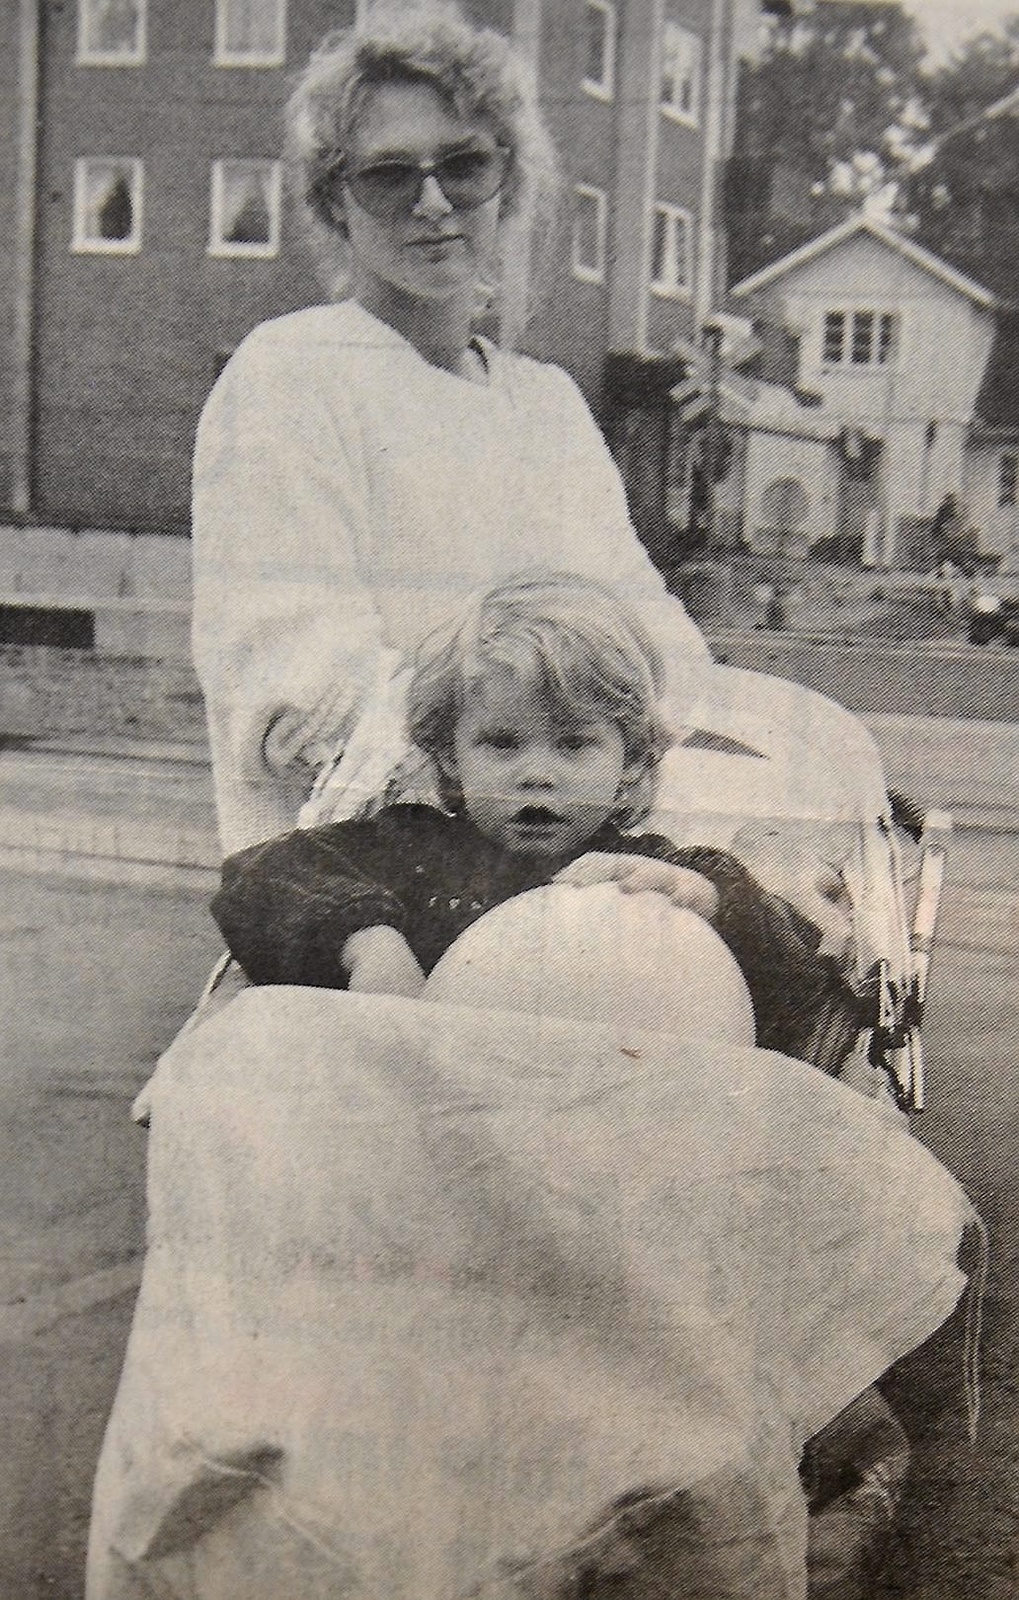 Den nya perrongtunneln är inget Ann Didriksson med dottern Mari i barnvagnen kan använda då Hantverksgatan stängs.
Arkiv